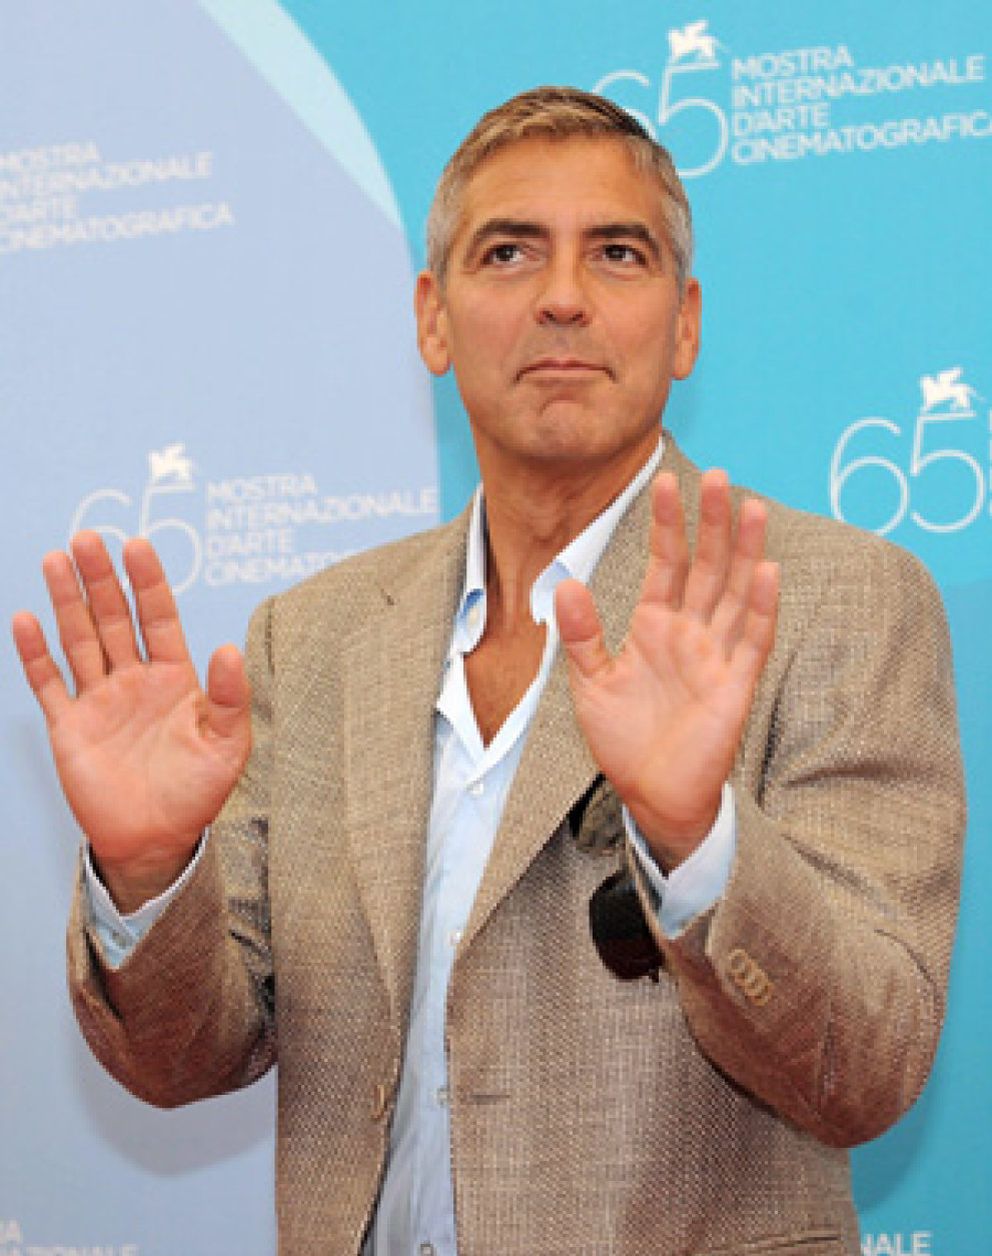 Foto: Clooney quiere seguir viajando a África, pero no piensa adoptar niños